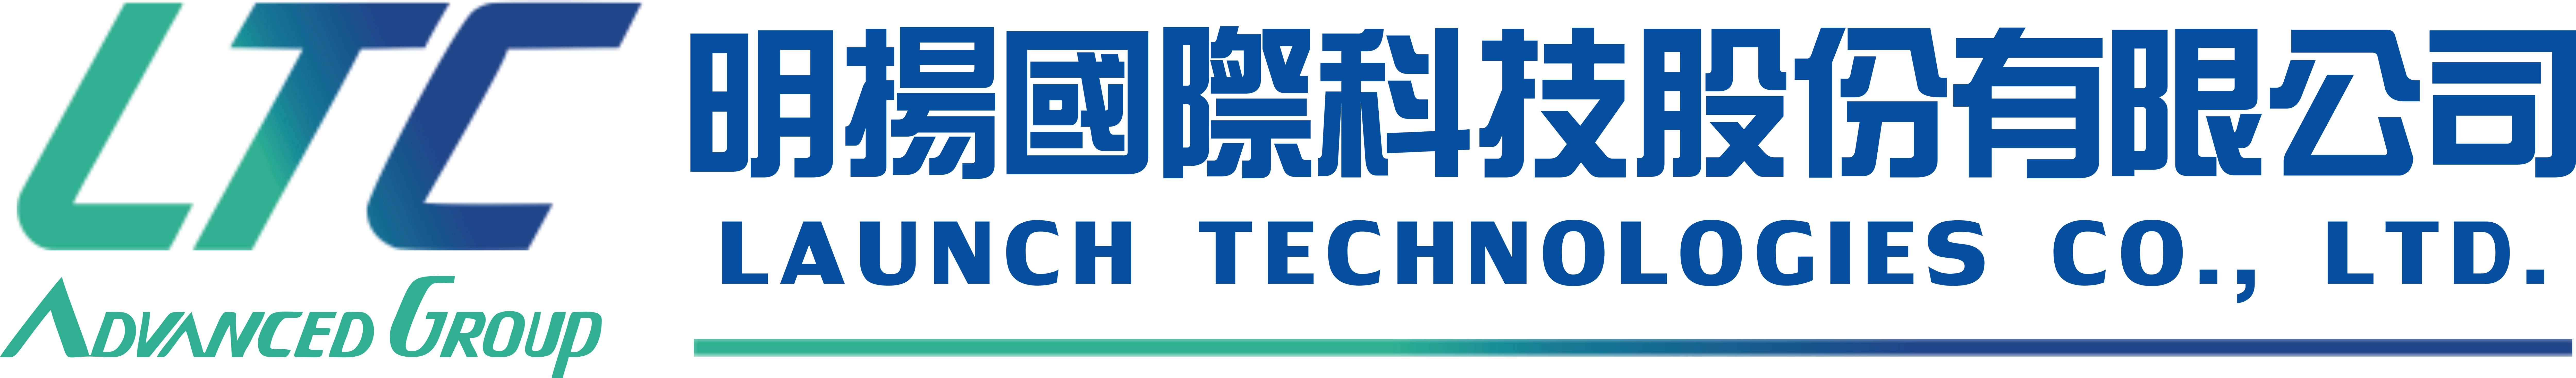 贊助標誌:明揚國際科技股份有限公司